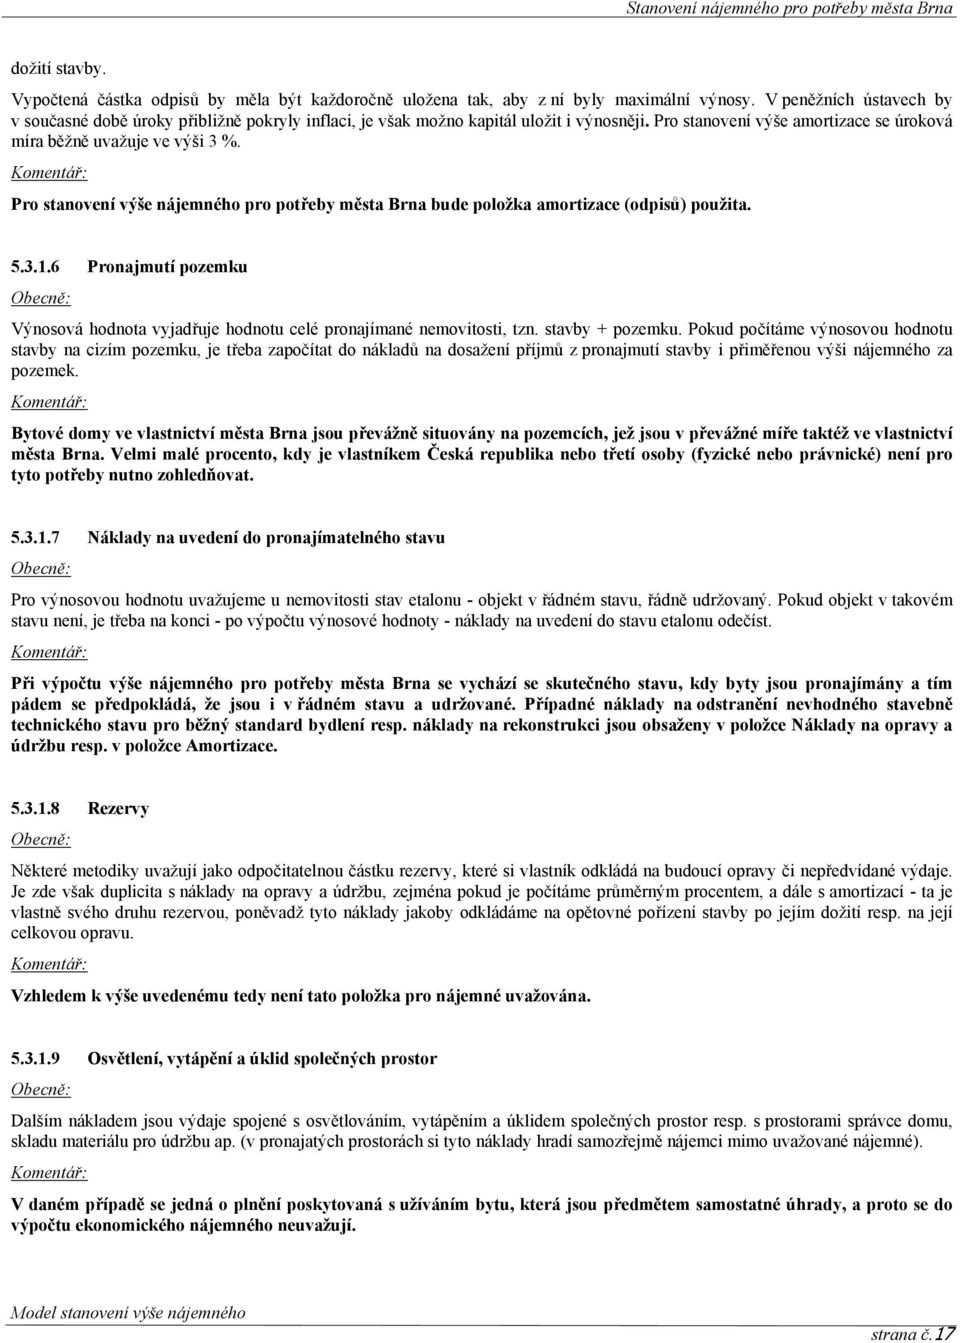 Komentář: Pro stanovení výše nájemného pro potřeby města Brna bude položka amortizace (odpisů) použita. 5.3.1.